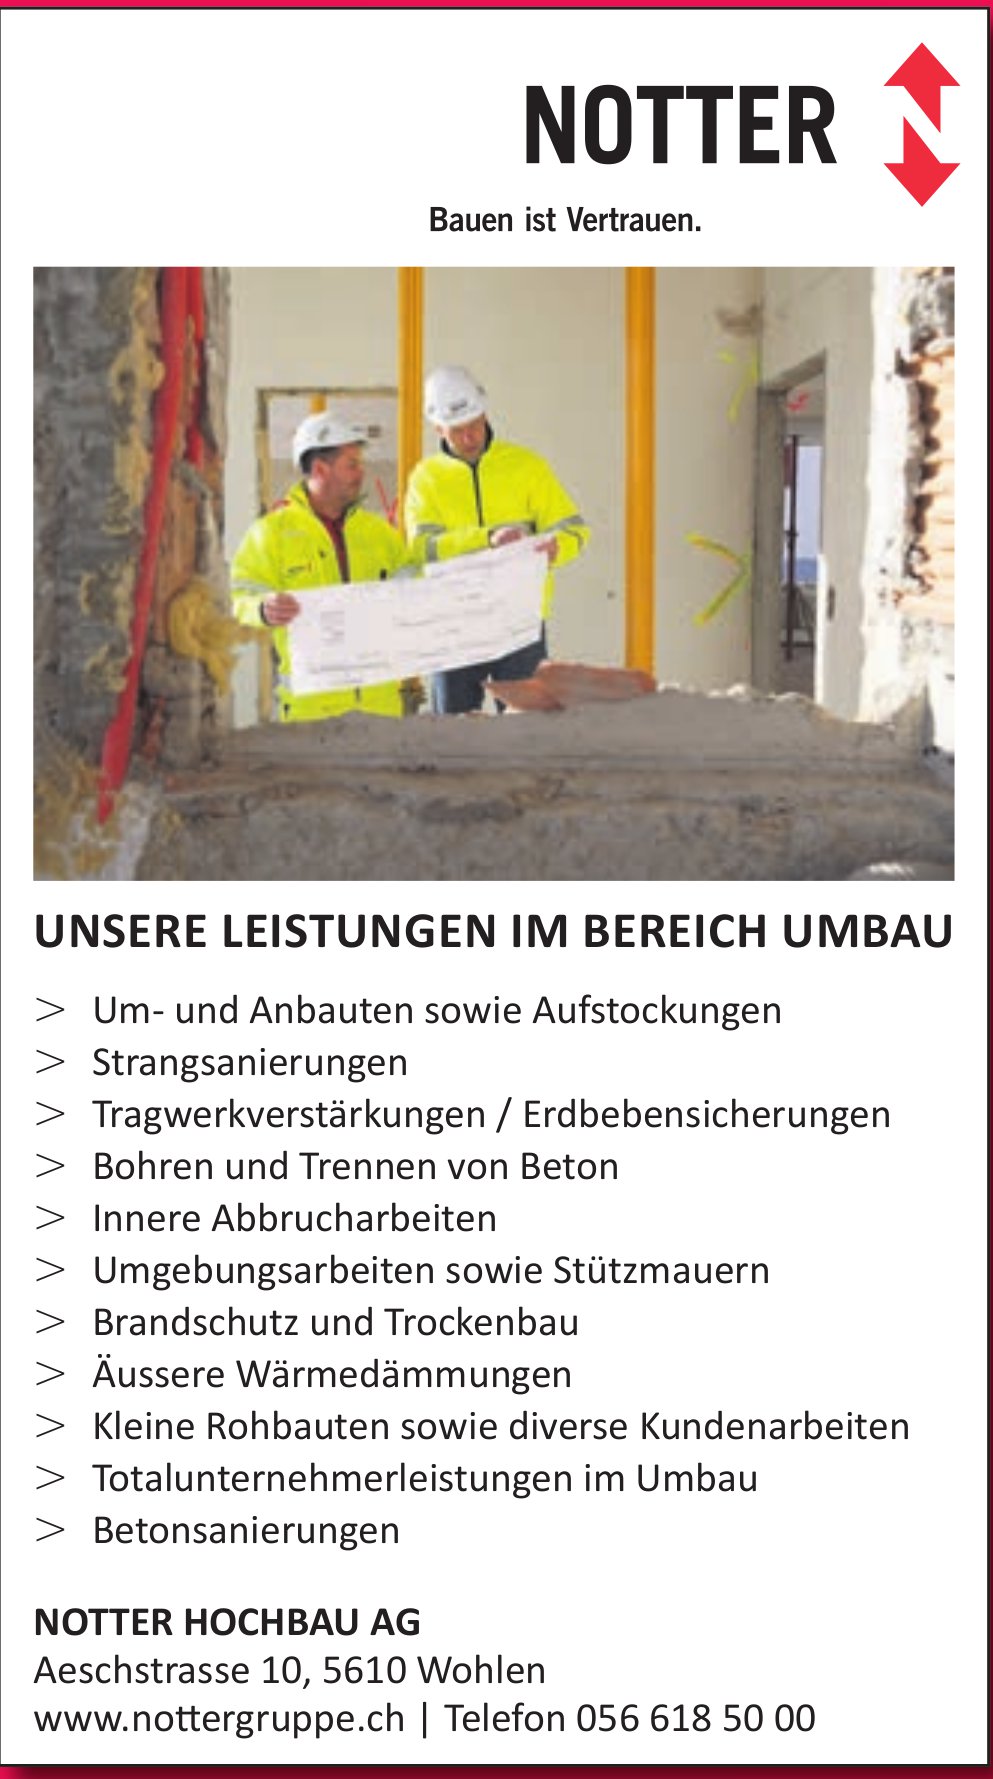 Notter Hochbau AG, Wohlen - Unsere Leistungen im Bereich Umbau